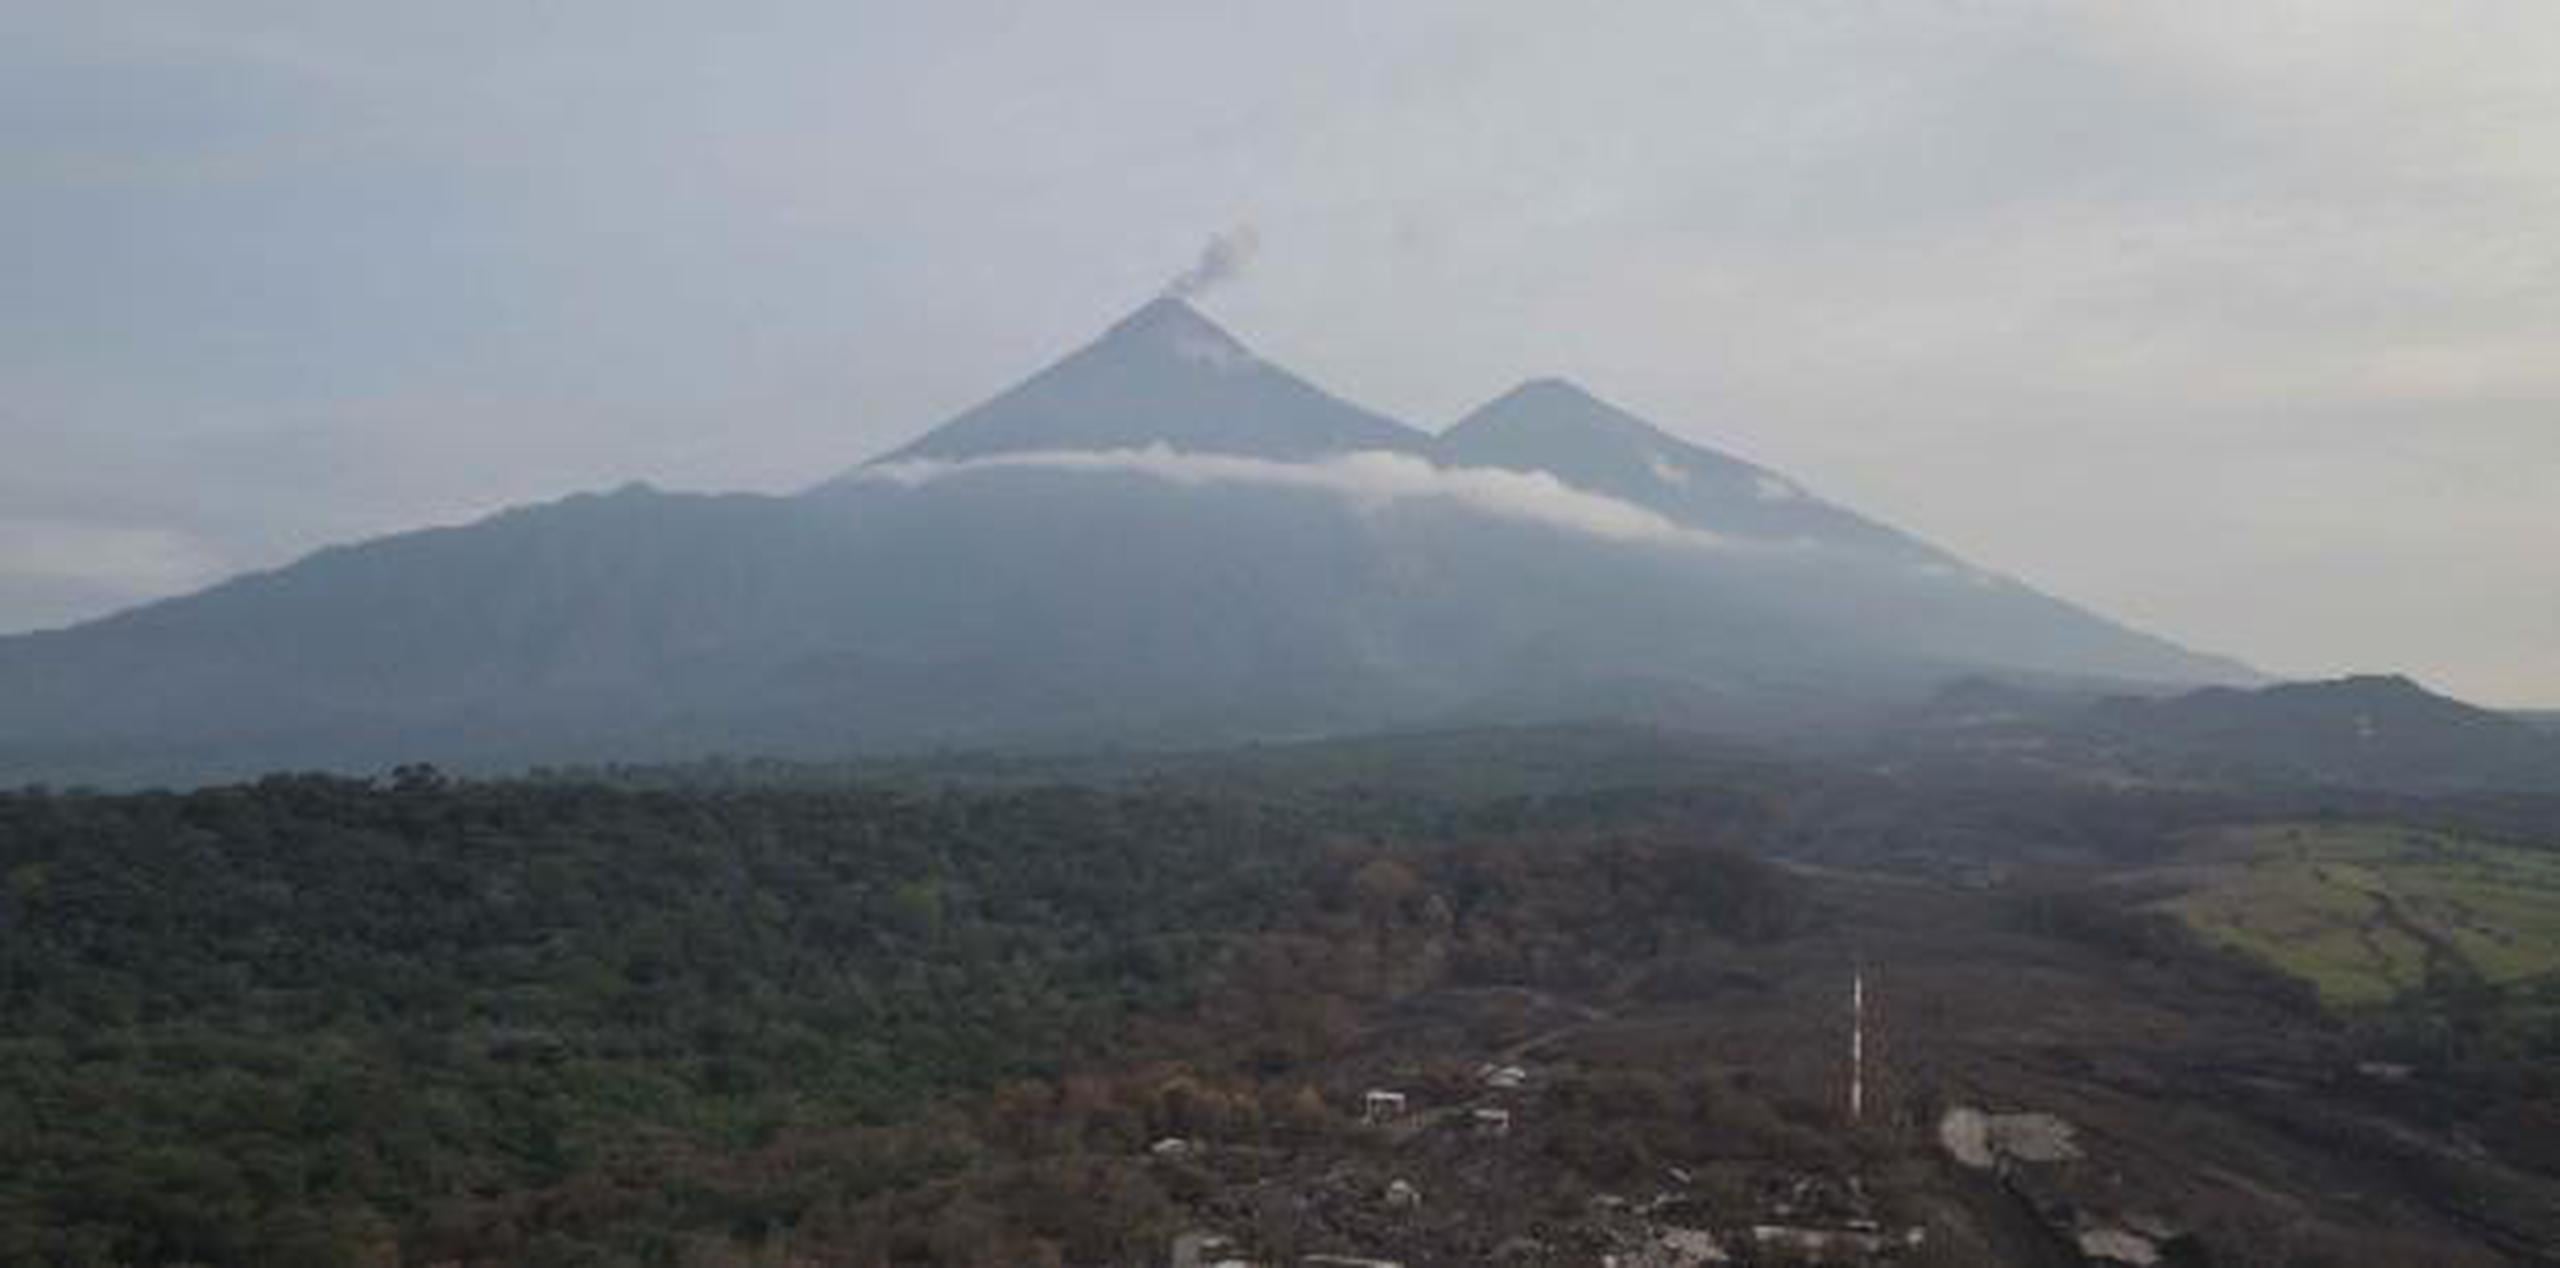 La potente erupción ha dejado millonarias pérdidas en los cultivos agrícolas. (AP / Rodrigo Abd)